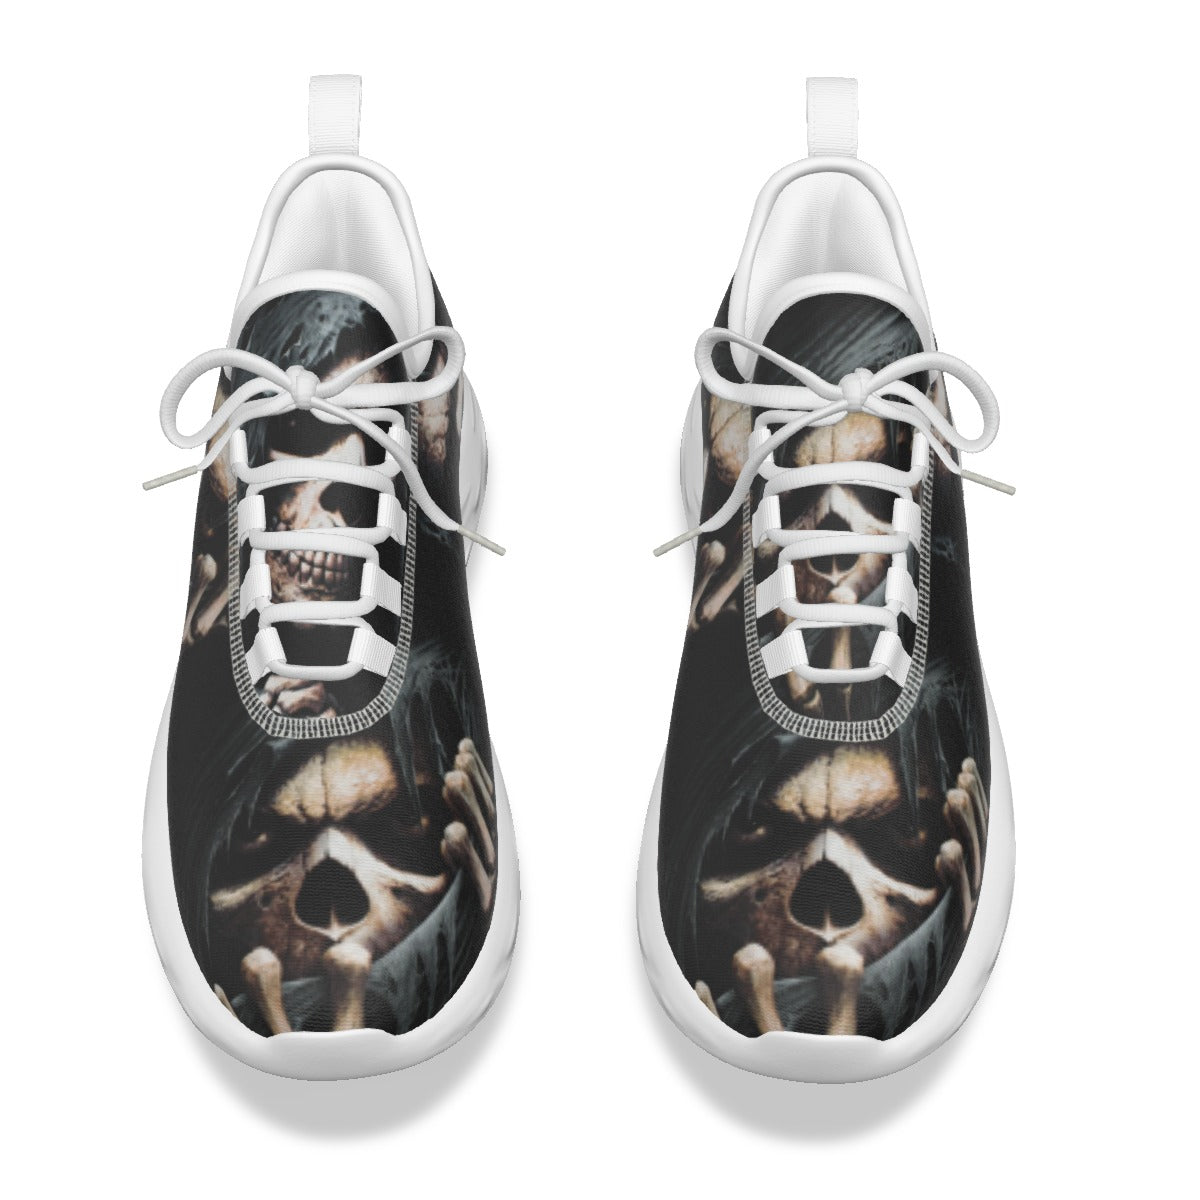 Gothic skull shoes for men